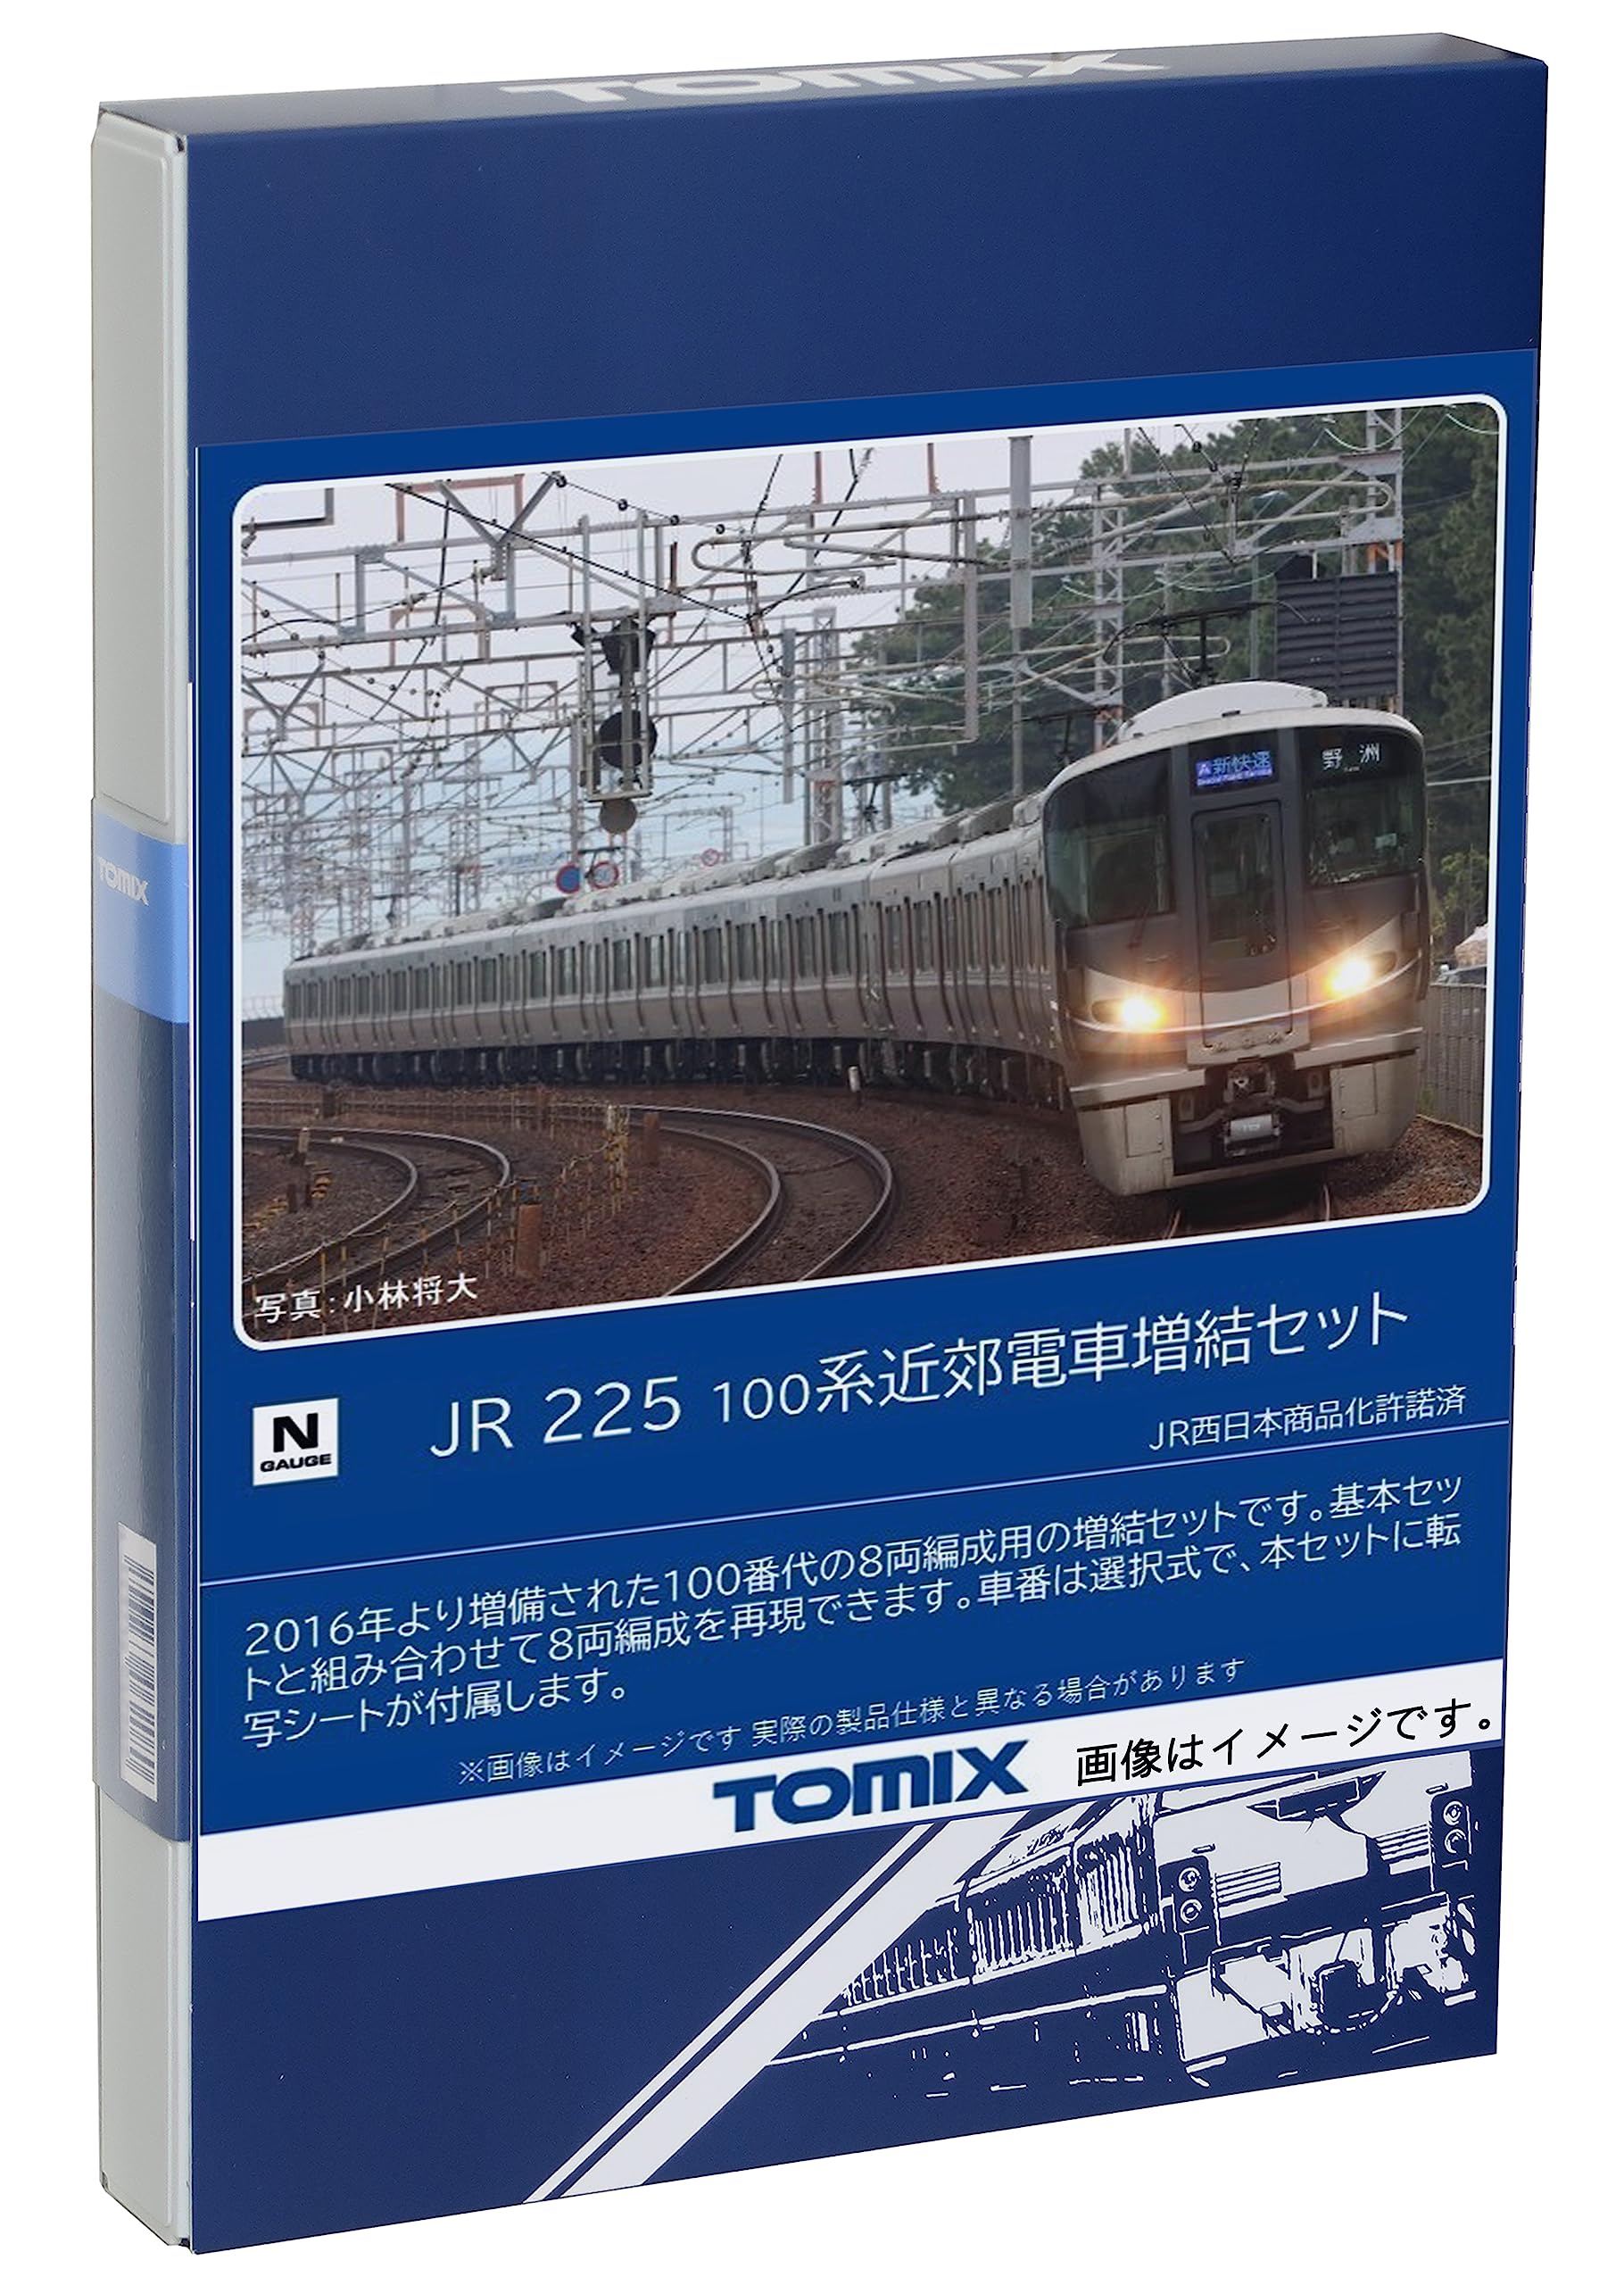 No:98545 TOMIX JR Nゲージ 225-100系近郊電車基本セット(4両